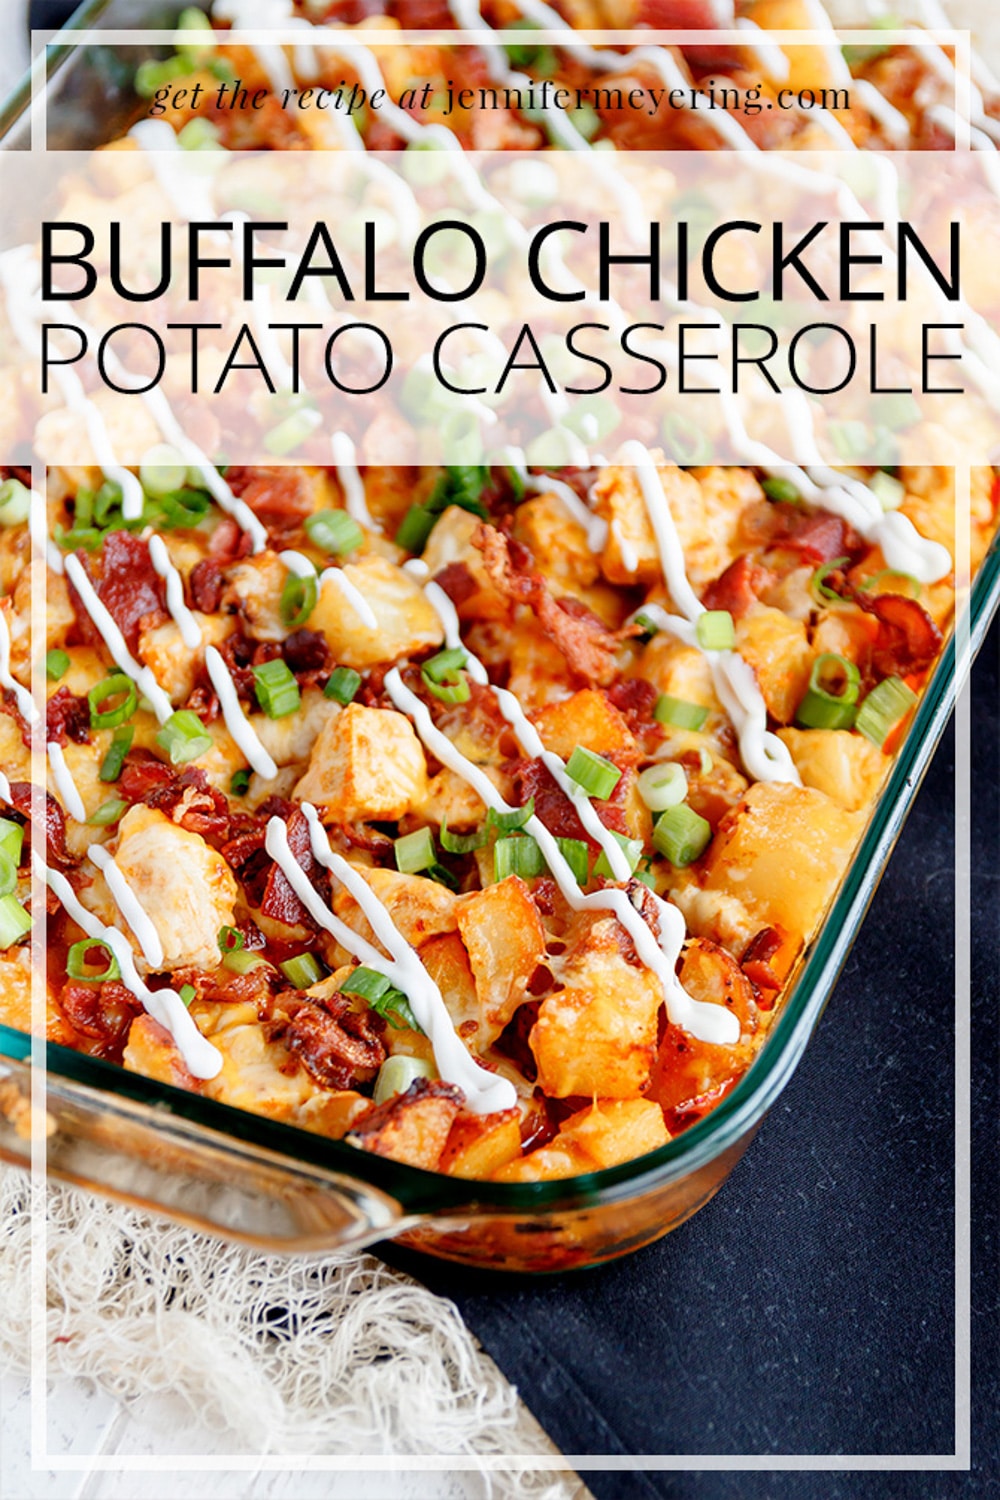 Buffalo Chicken & Potato Casserole - JenniferMeyering.com